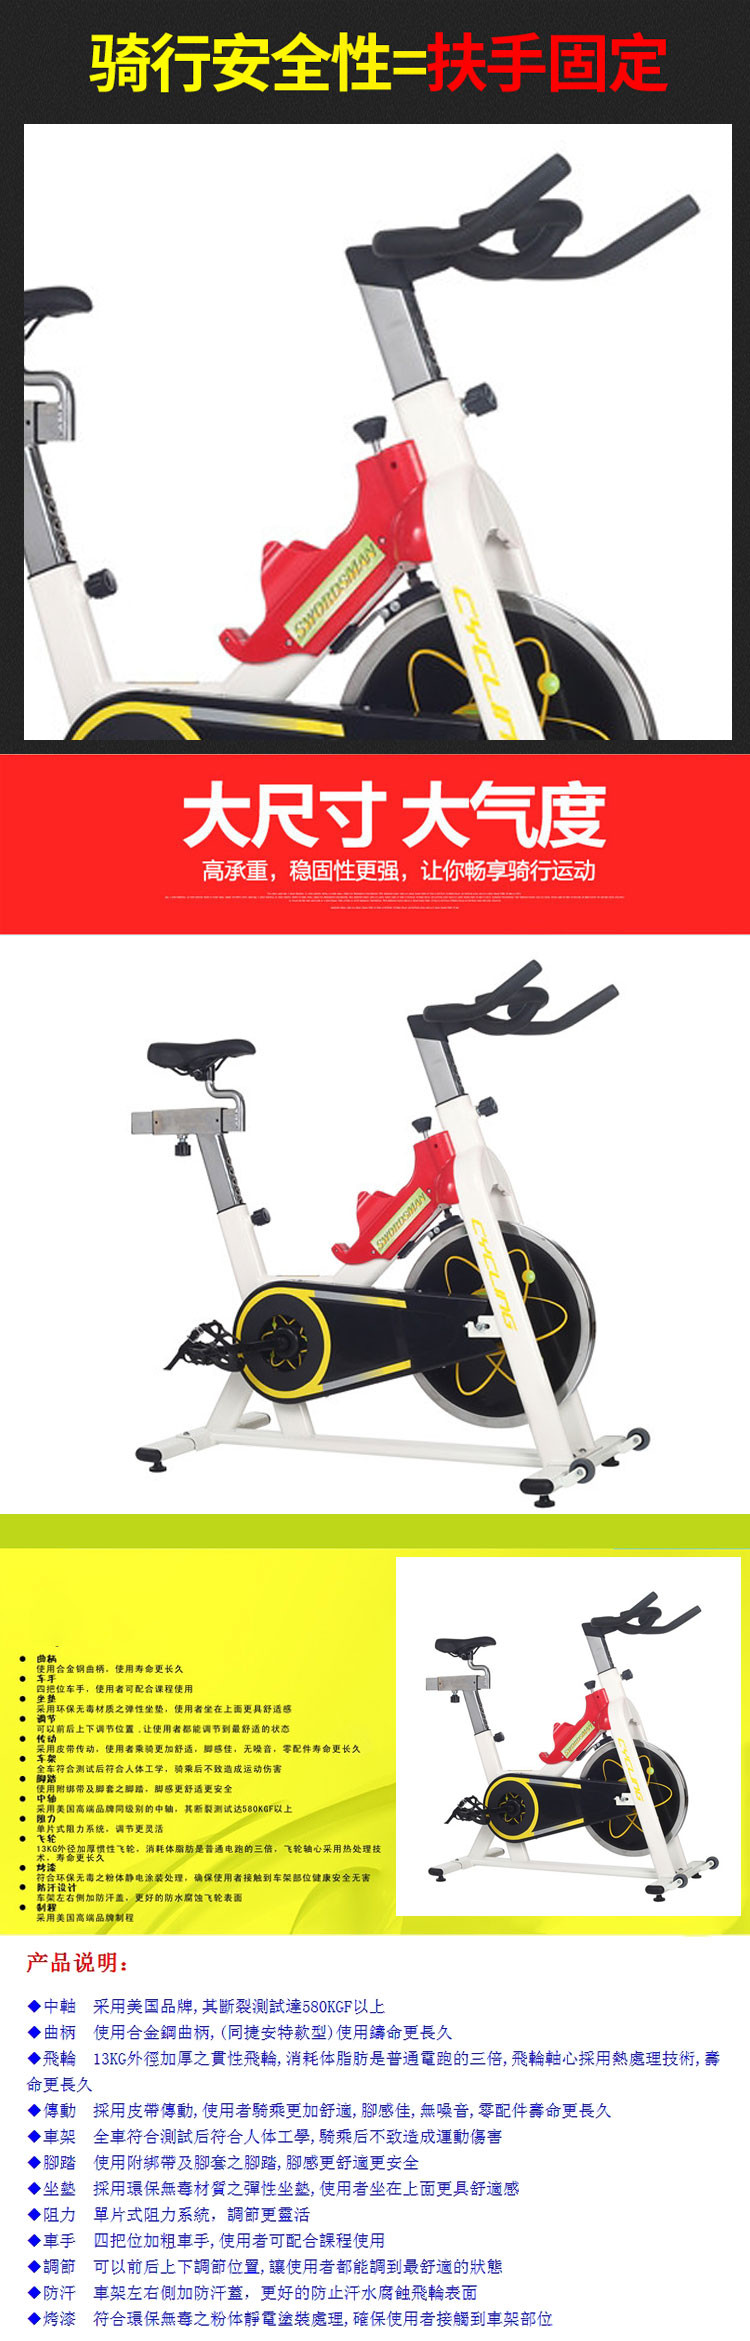 【仅限新乡地区销售】亚新鸿家用动感单车115B 脚踏车 健身车 健身器